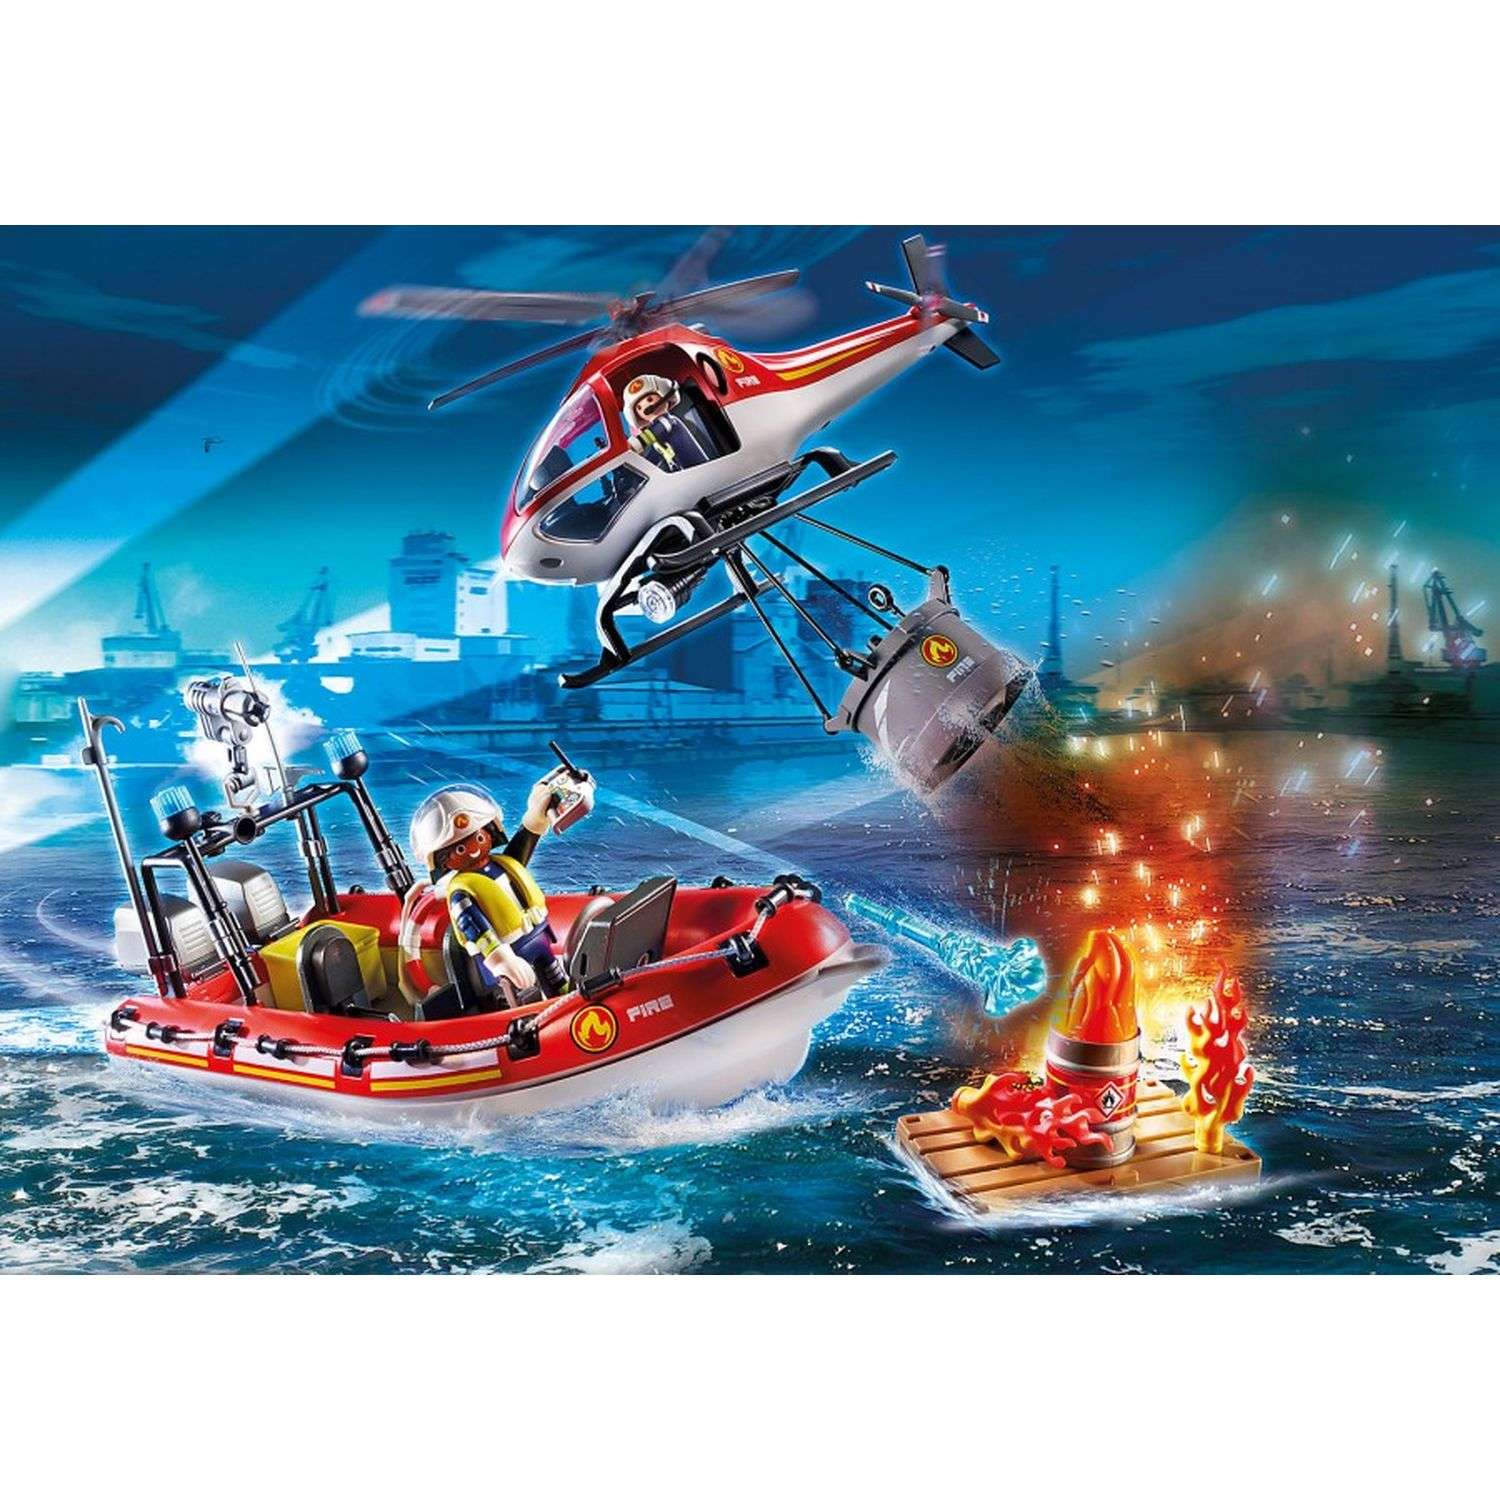 Спасательная миссия. Плеймобил конструктор спасательный вертолет. Playmobil пожарный вертолет. Плеймобил конструктор лодка пожарный.